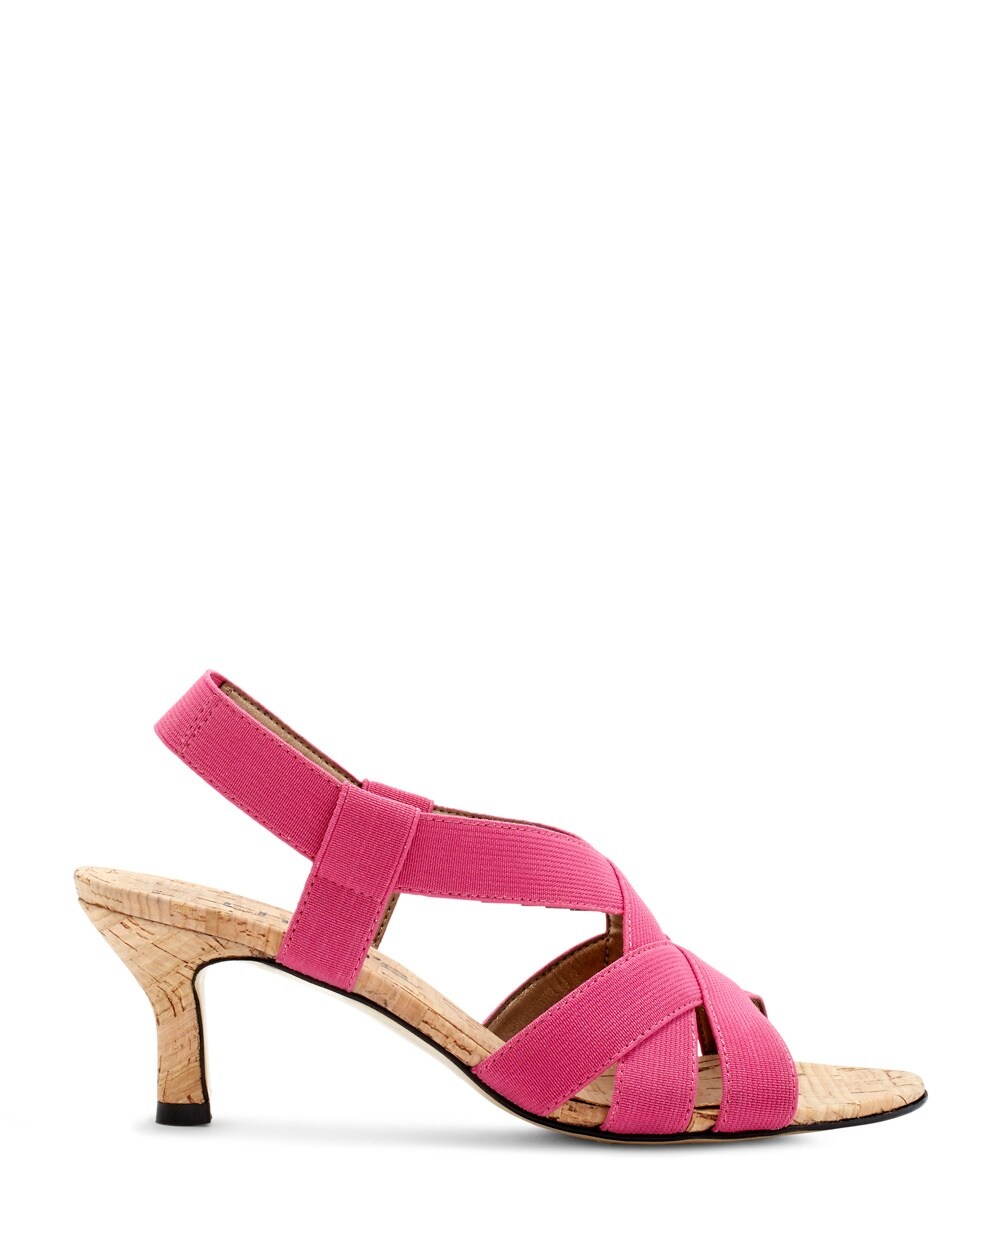 Maryann Voltage Pink Cork Heels